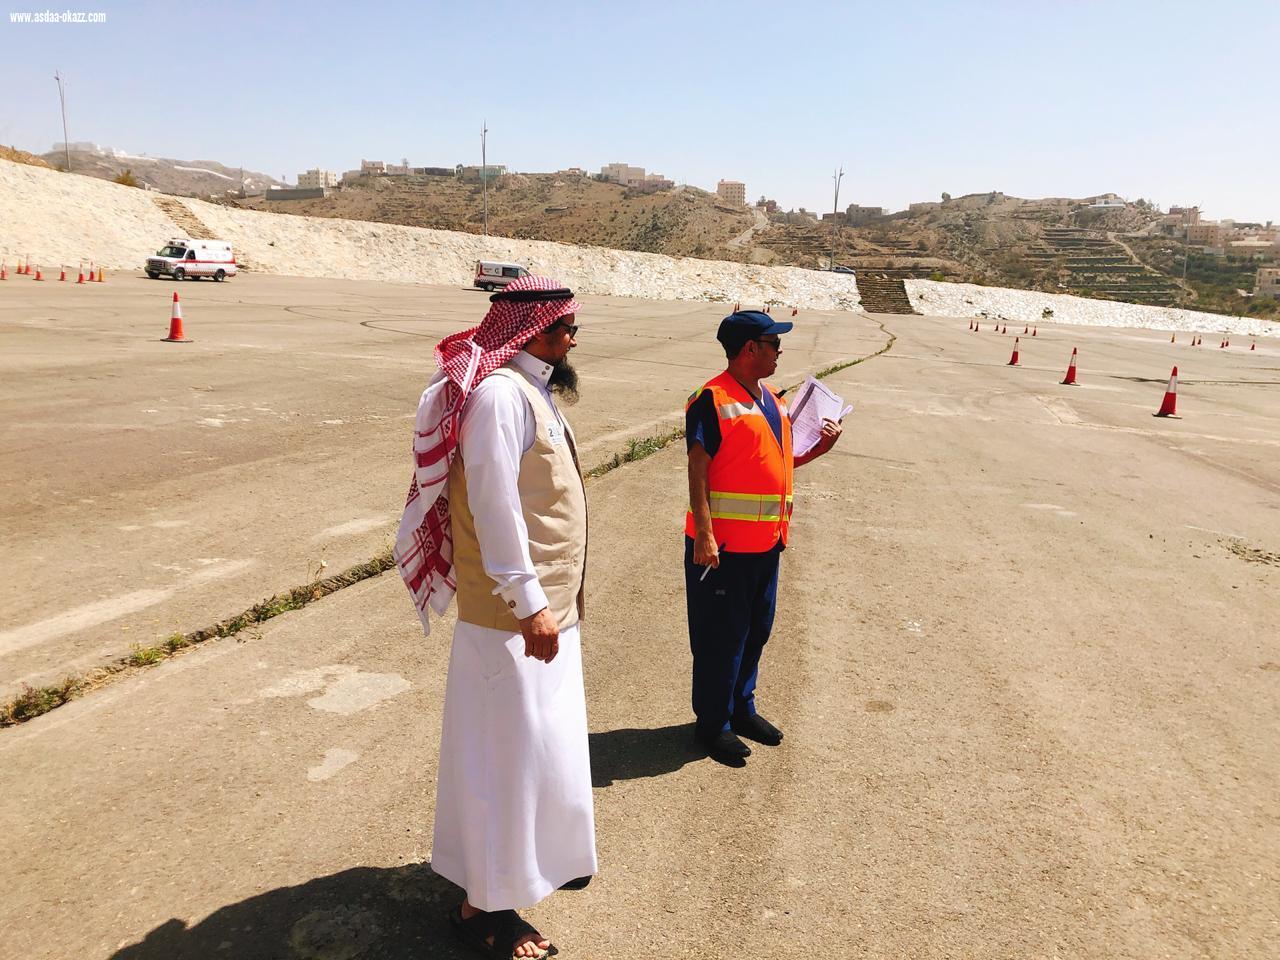 مدير عام هلال الباحة   الغامدي  يقف ميدانياً على جاهزية الفرق الإسعافية اثناء التدريب الميداني على مهارات القيادة الآمنة